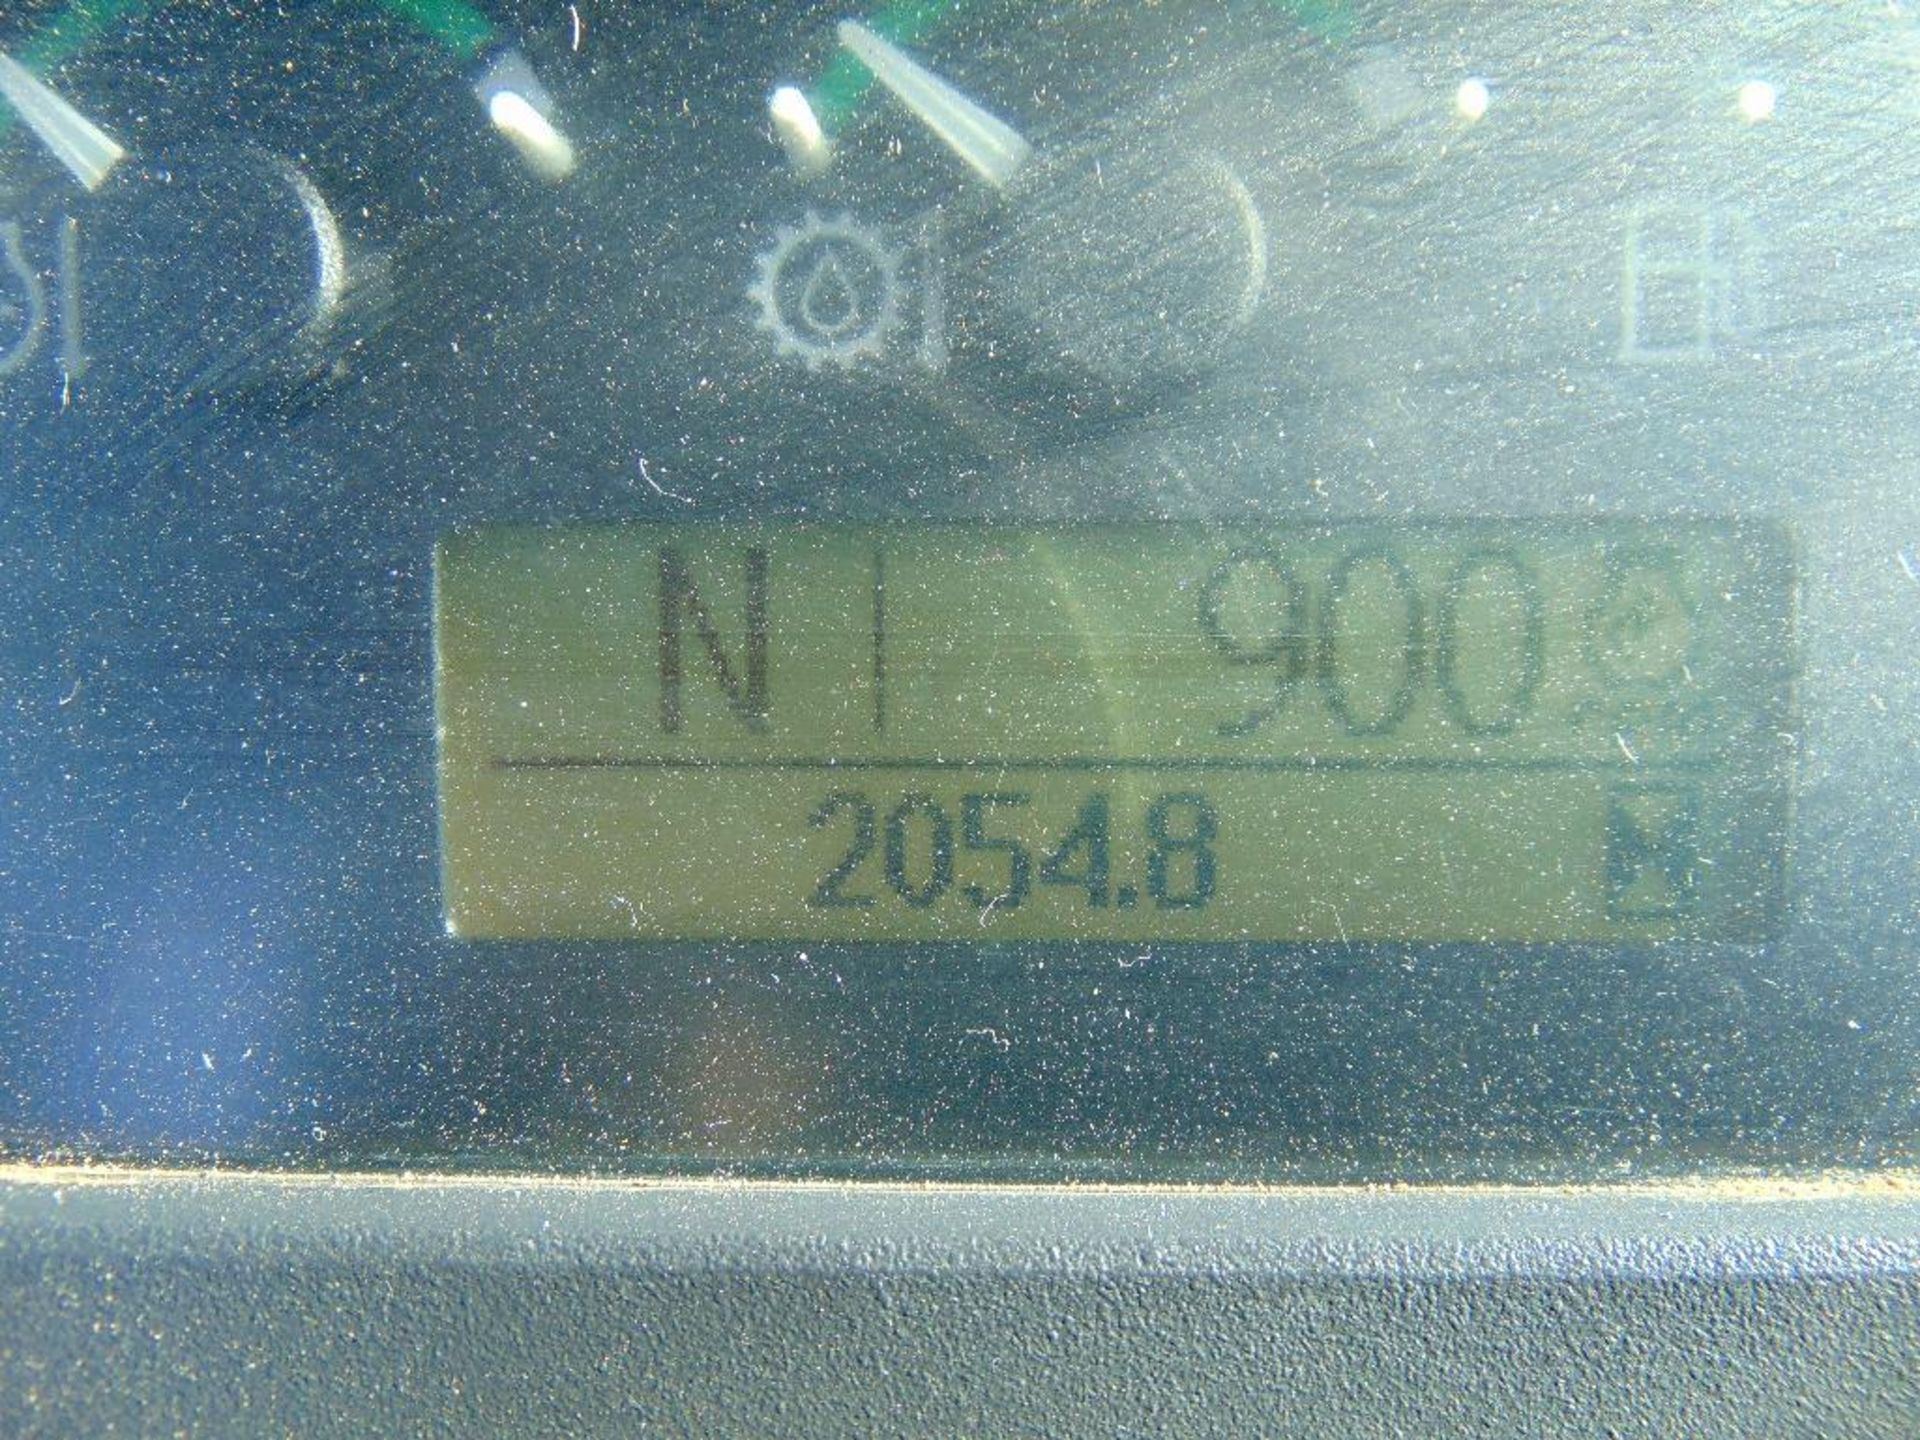 2012 John Deere 310J 4x4 Loader Backhoe, s/n 210388, gp bkt, cab, a/c, hour meter reads 2055 hrs, - Image 10 of 10